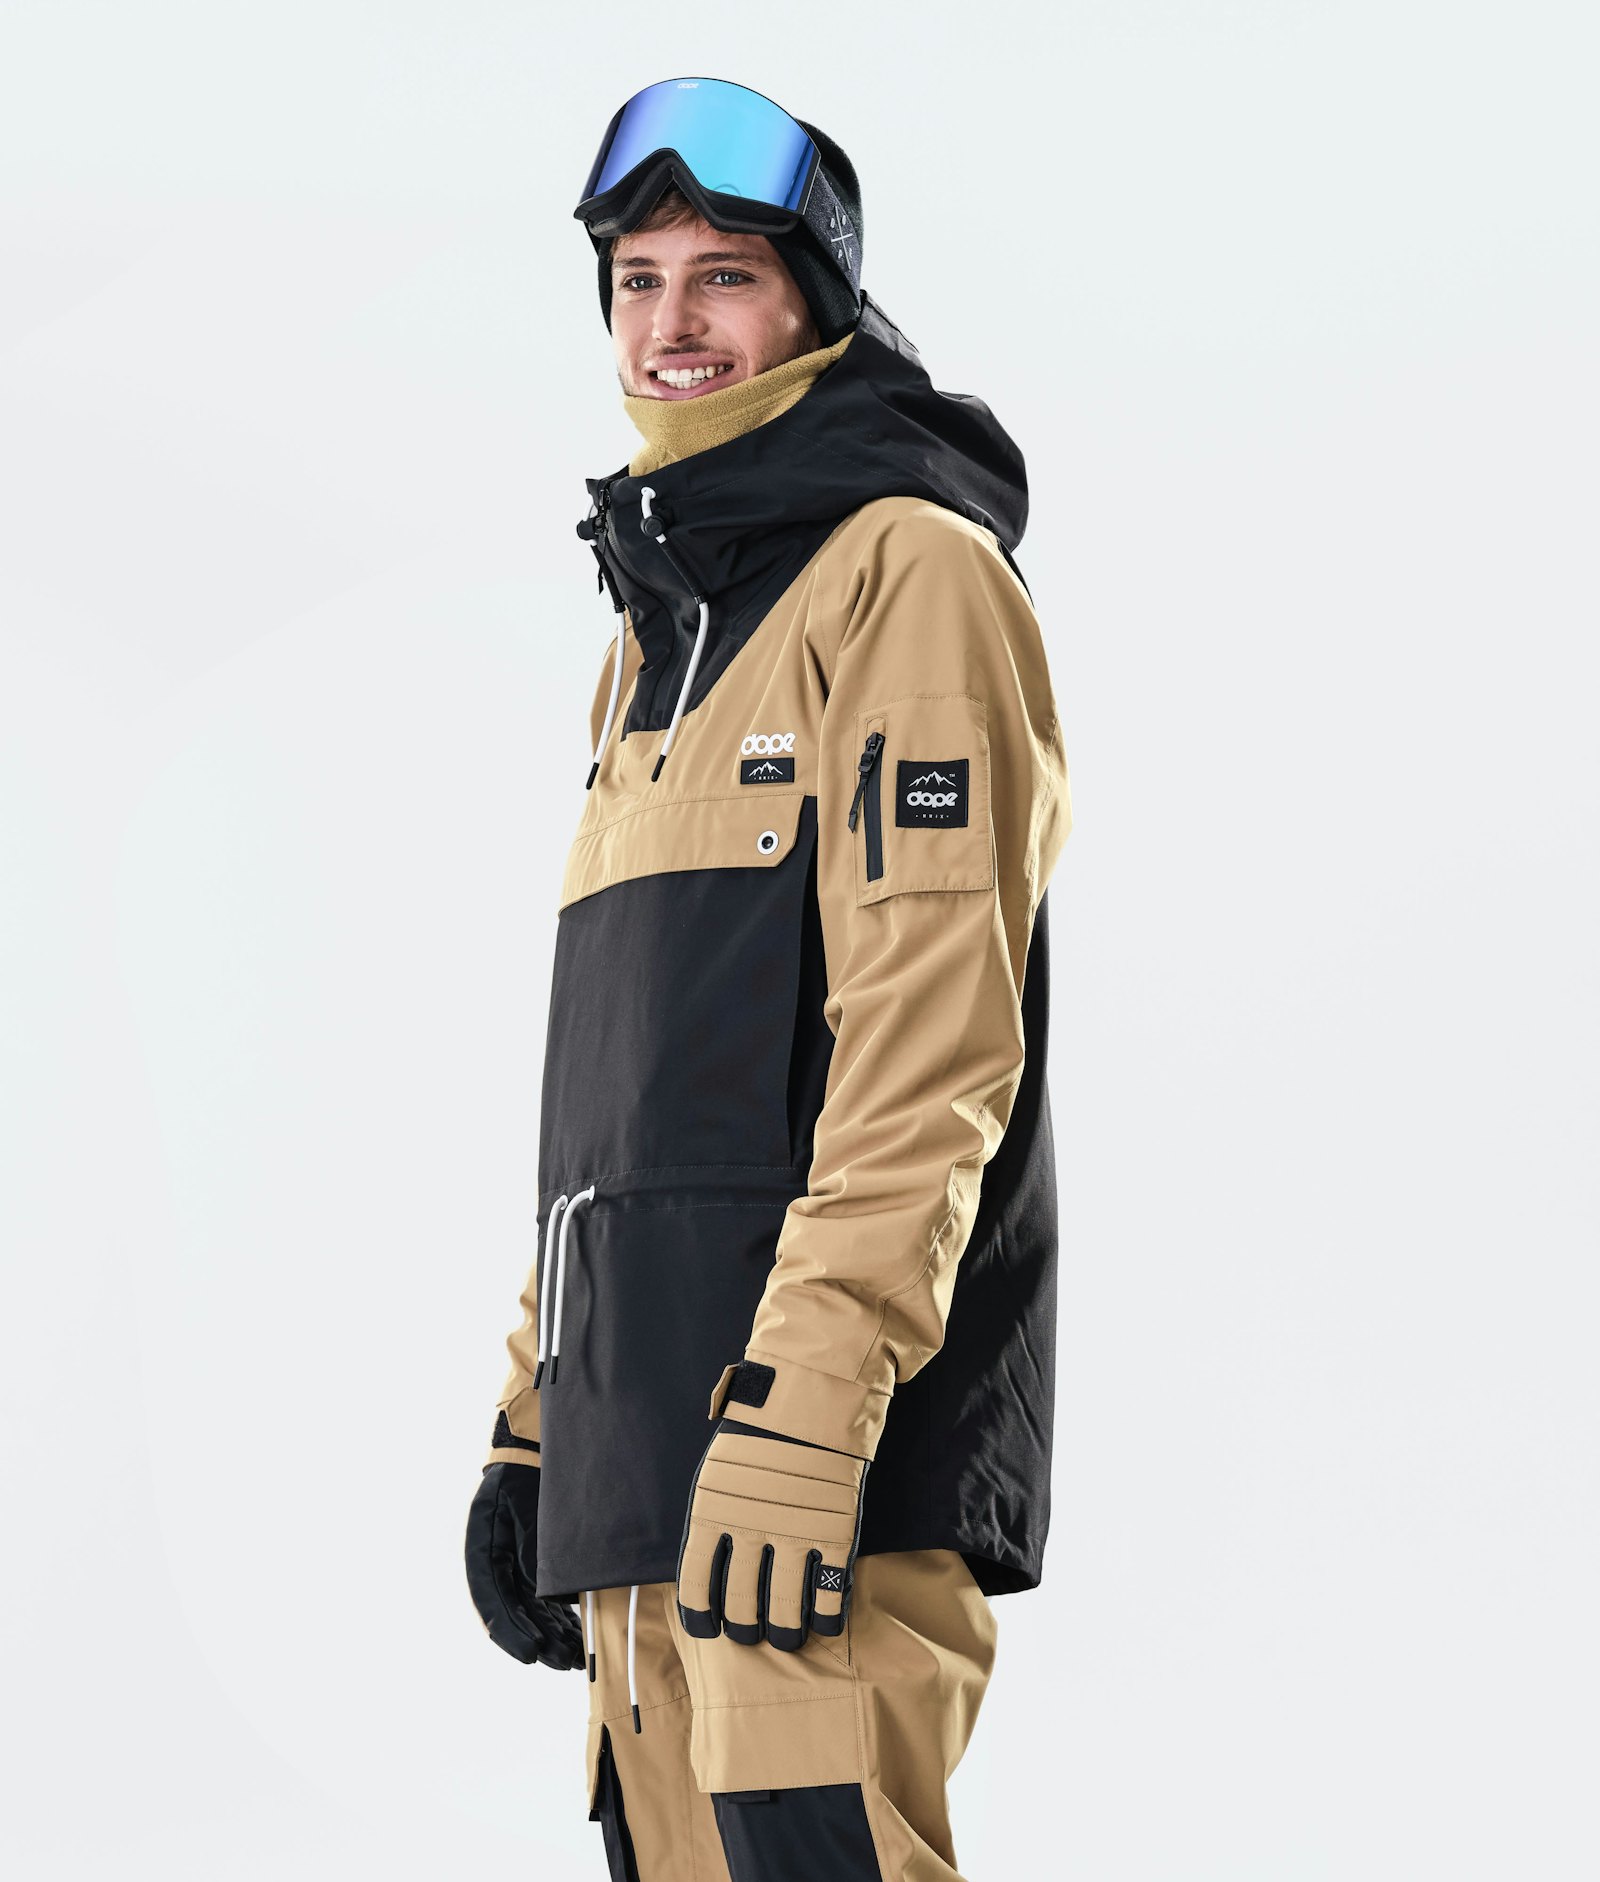 Annok 2020 Veste Snowboard Homme Gold/Black